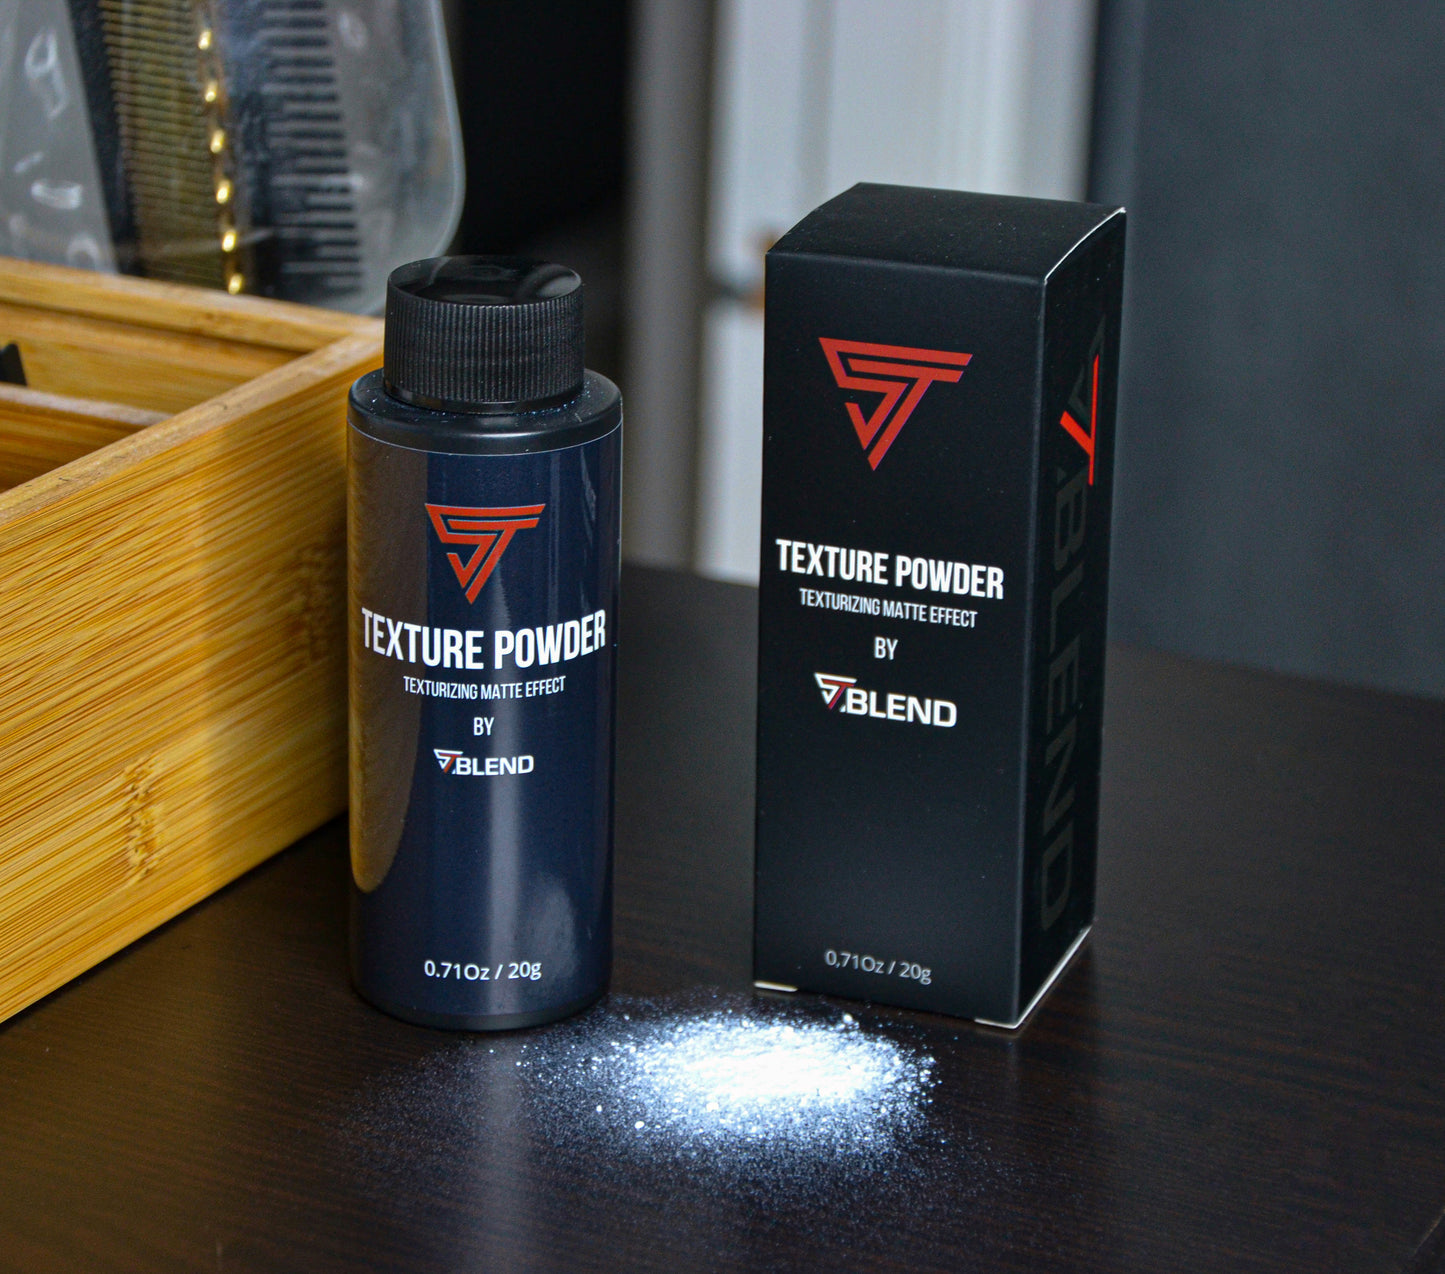 Texture Powder - St. Blend™